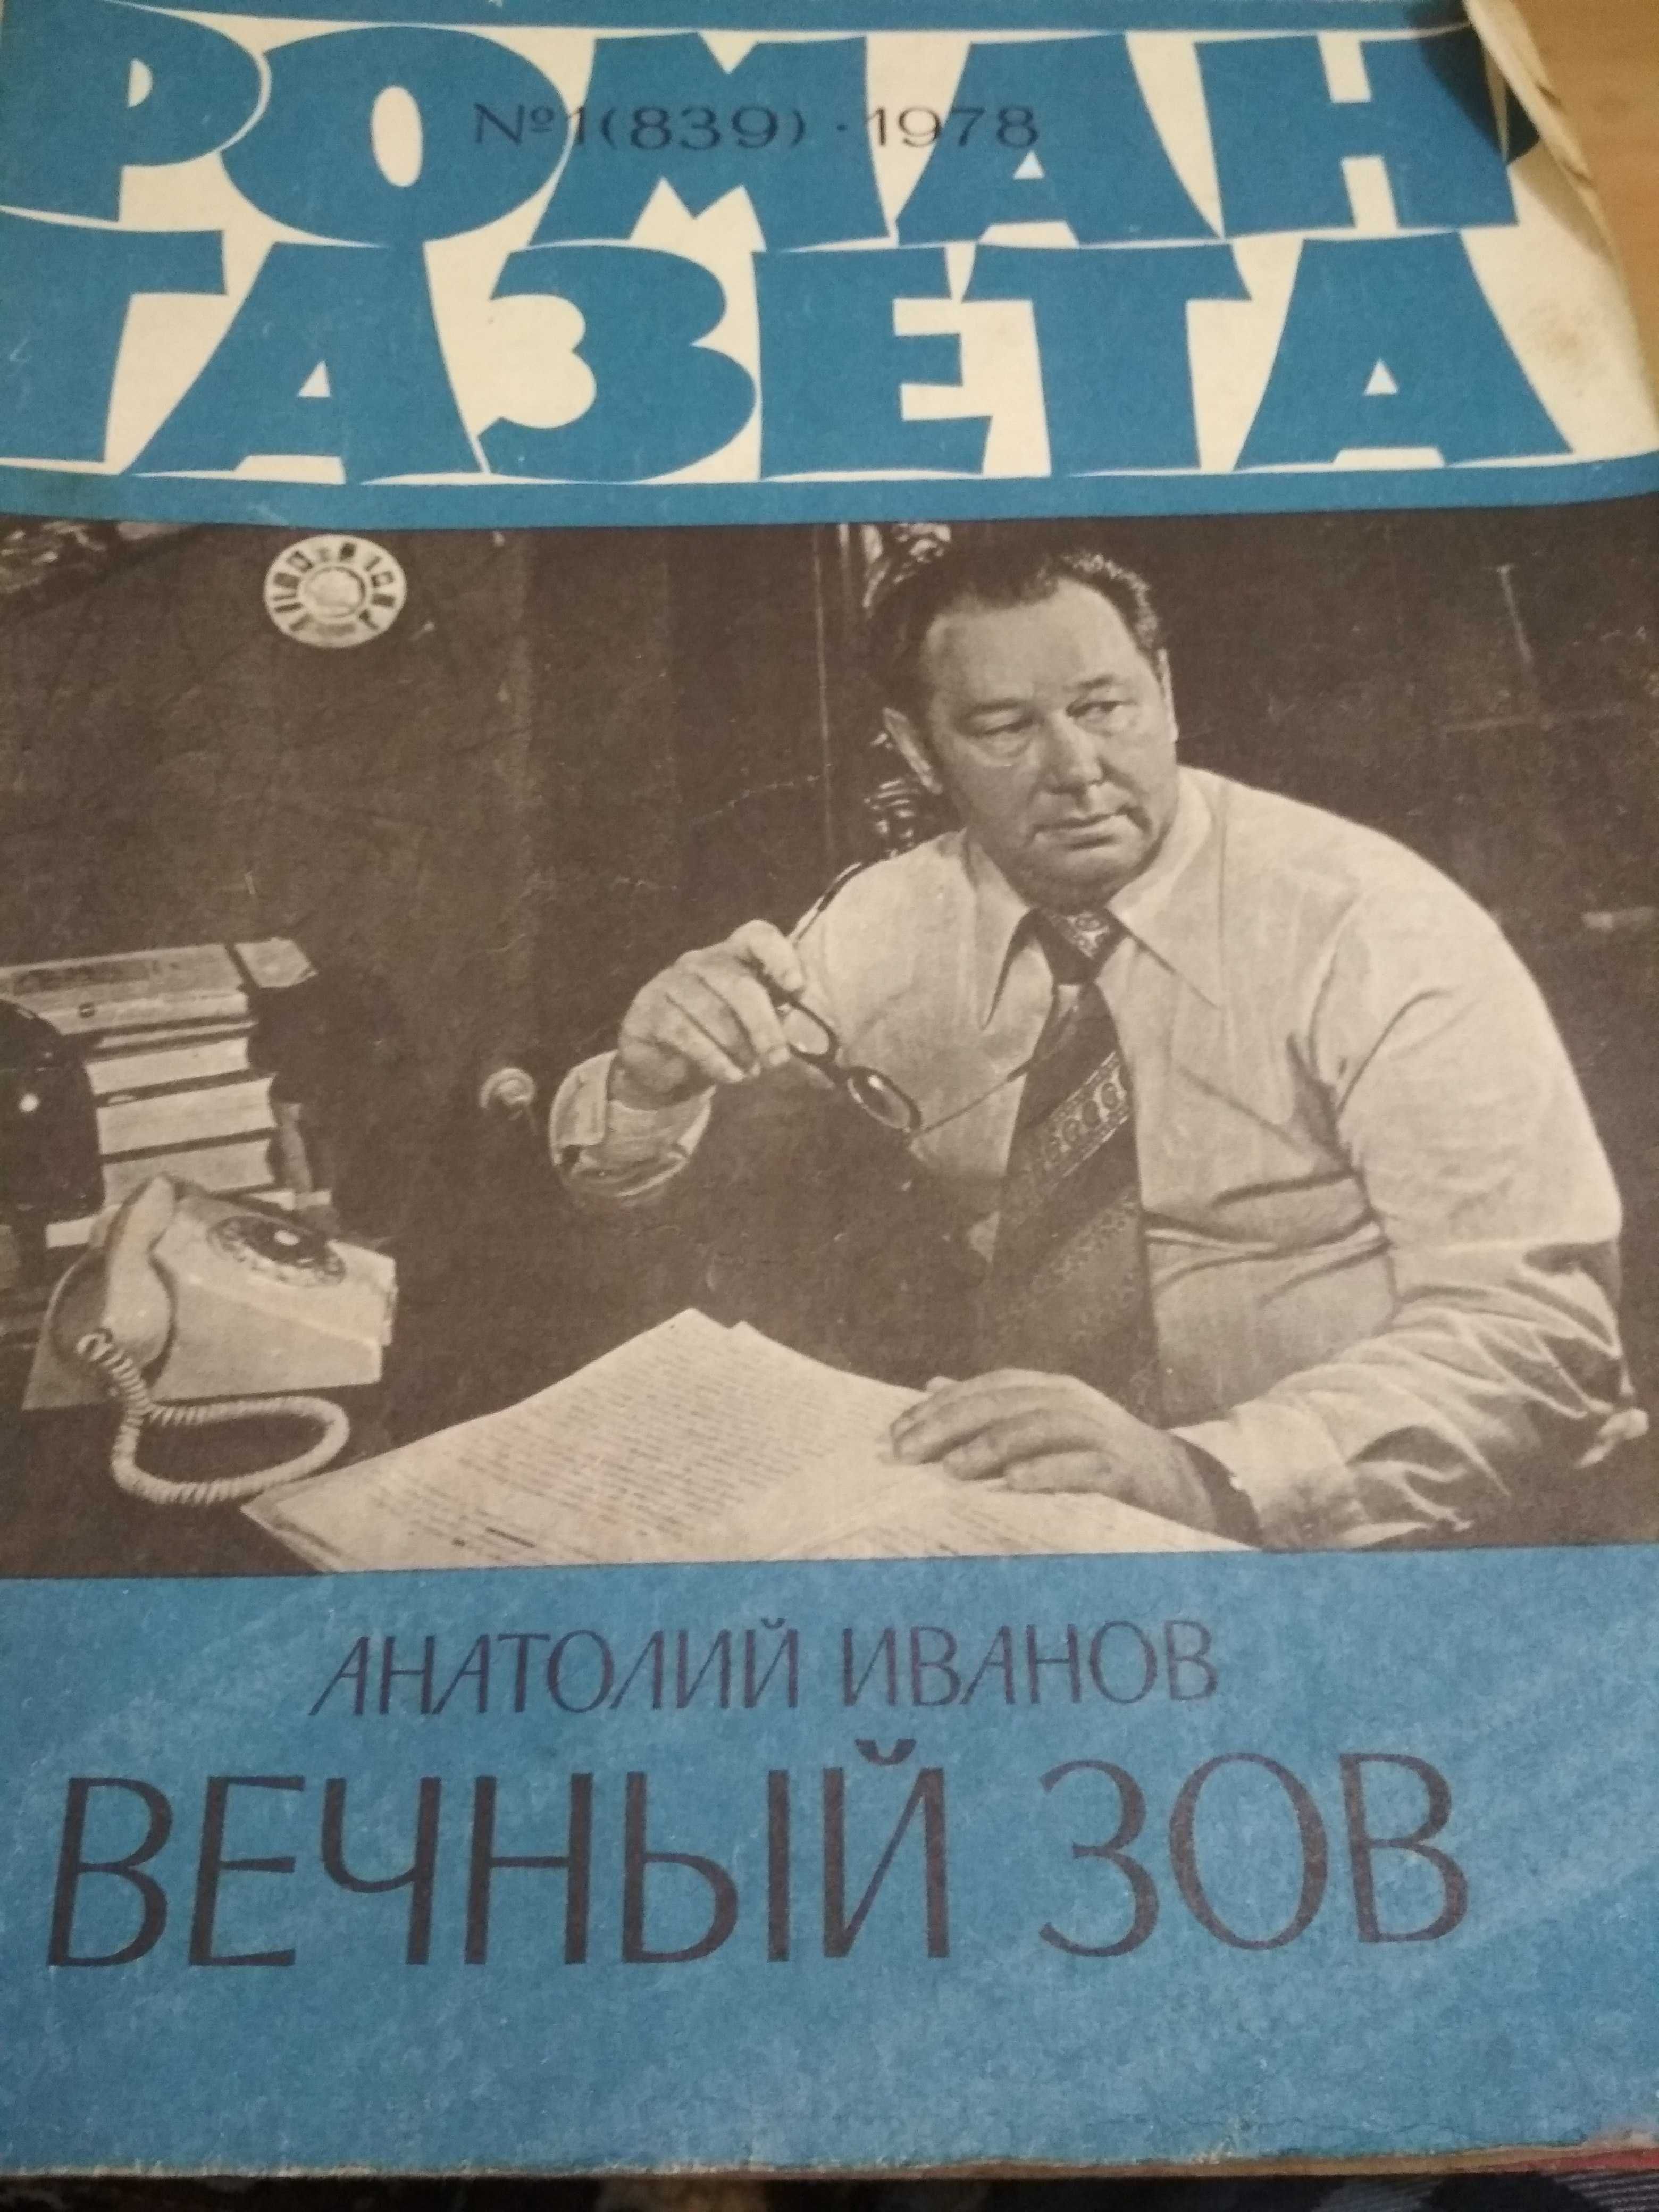 Роман-газеты, СССР, распродажа, 50 грн.